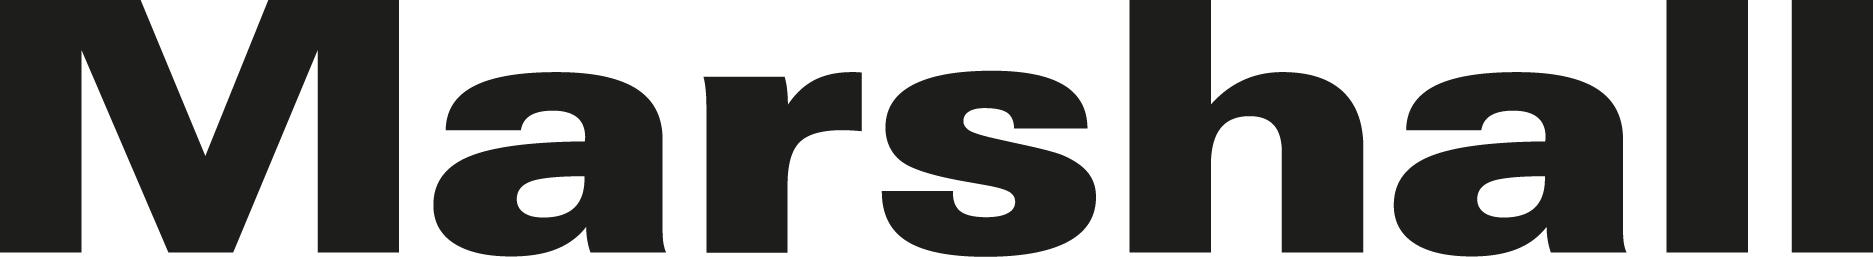 Marshall Logo [Electronics] png